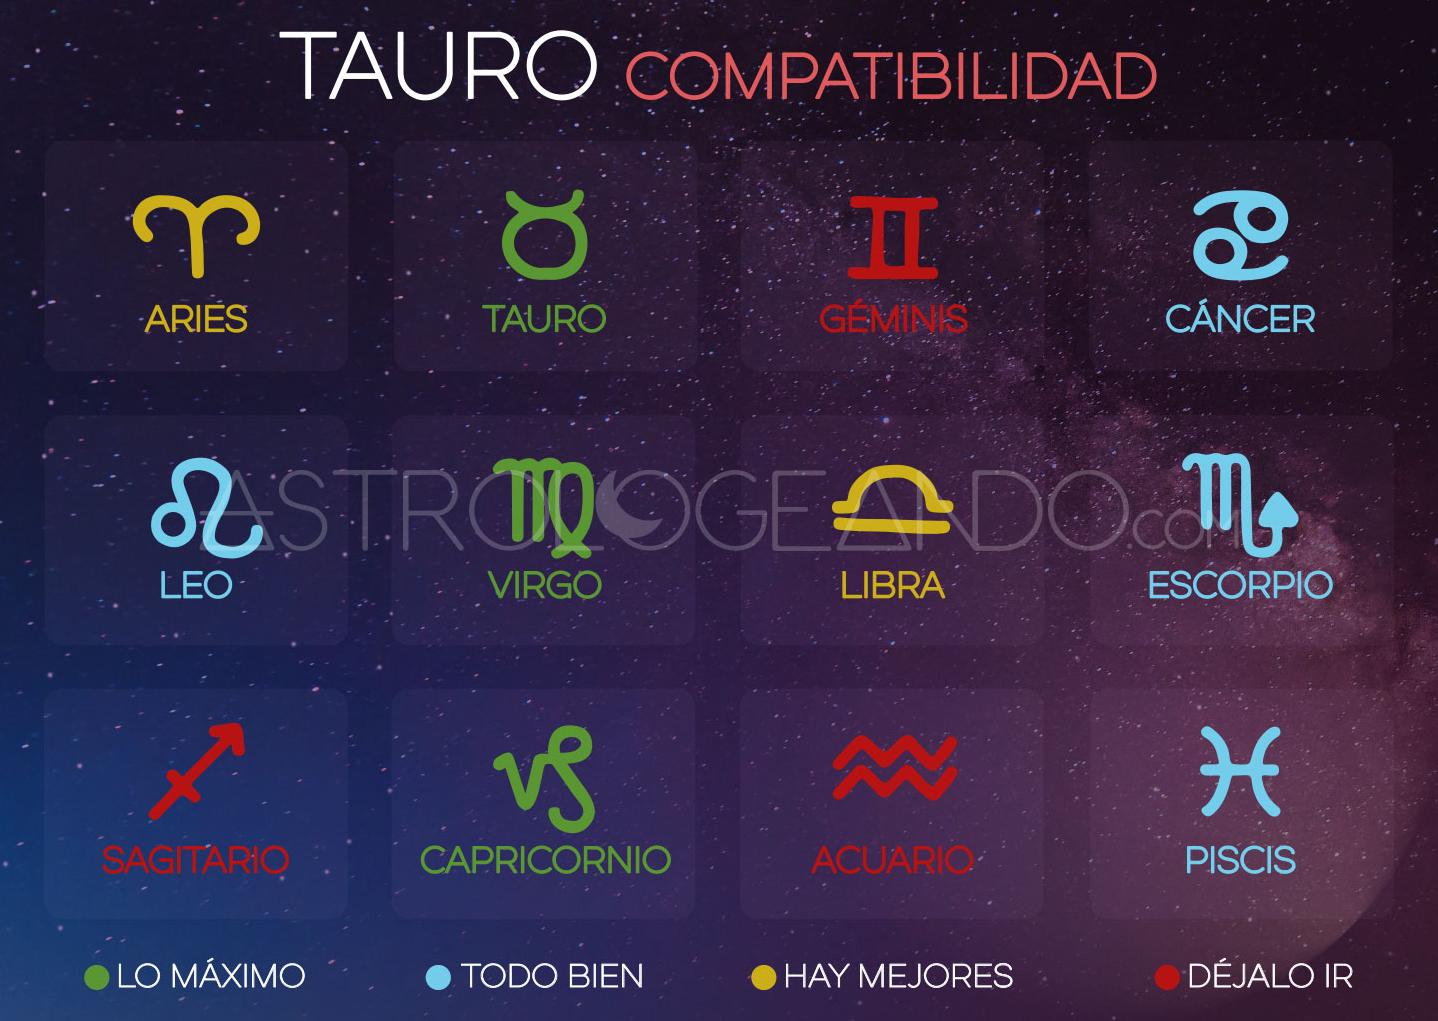 Taurus og Leo er kompatible!